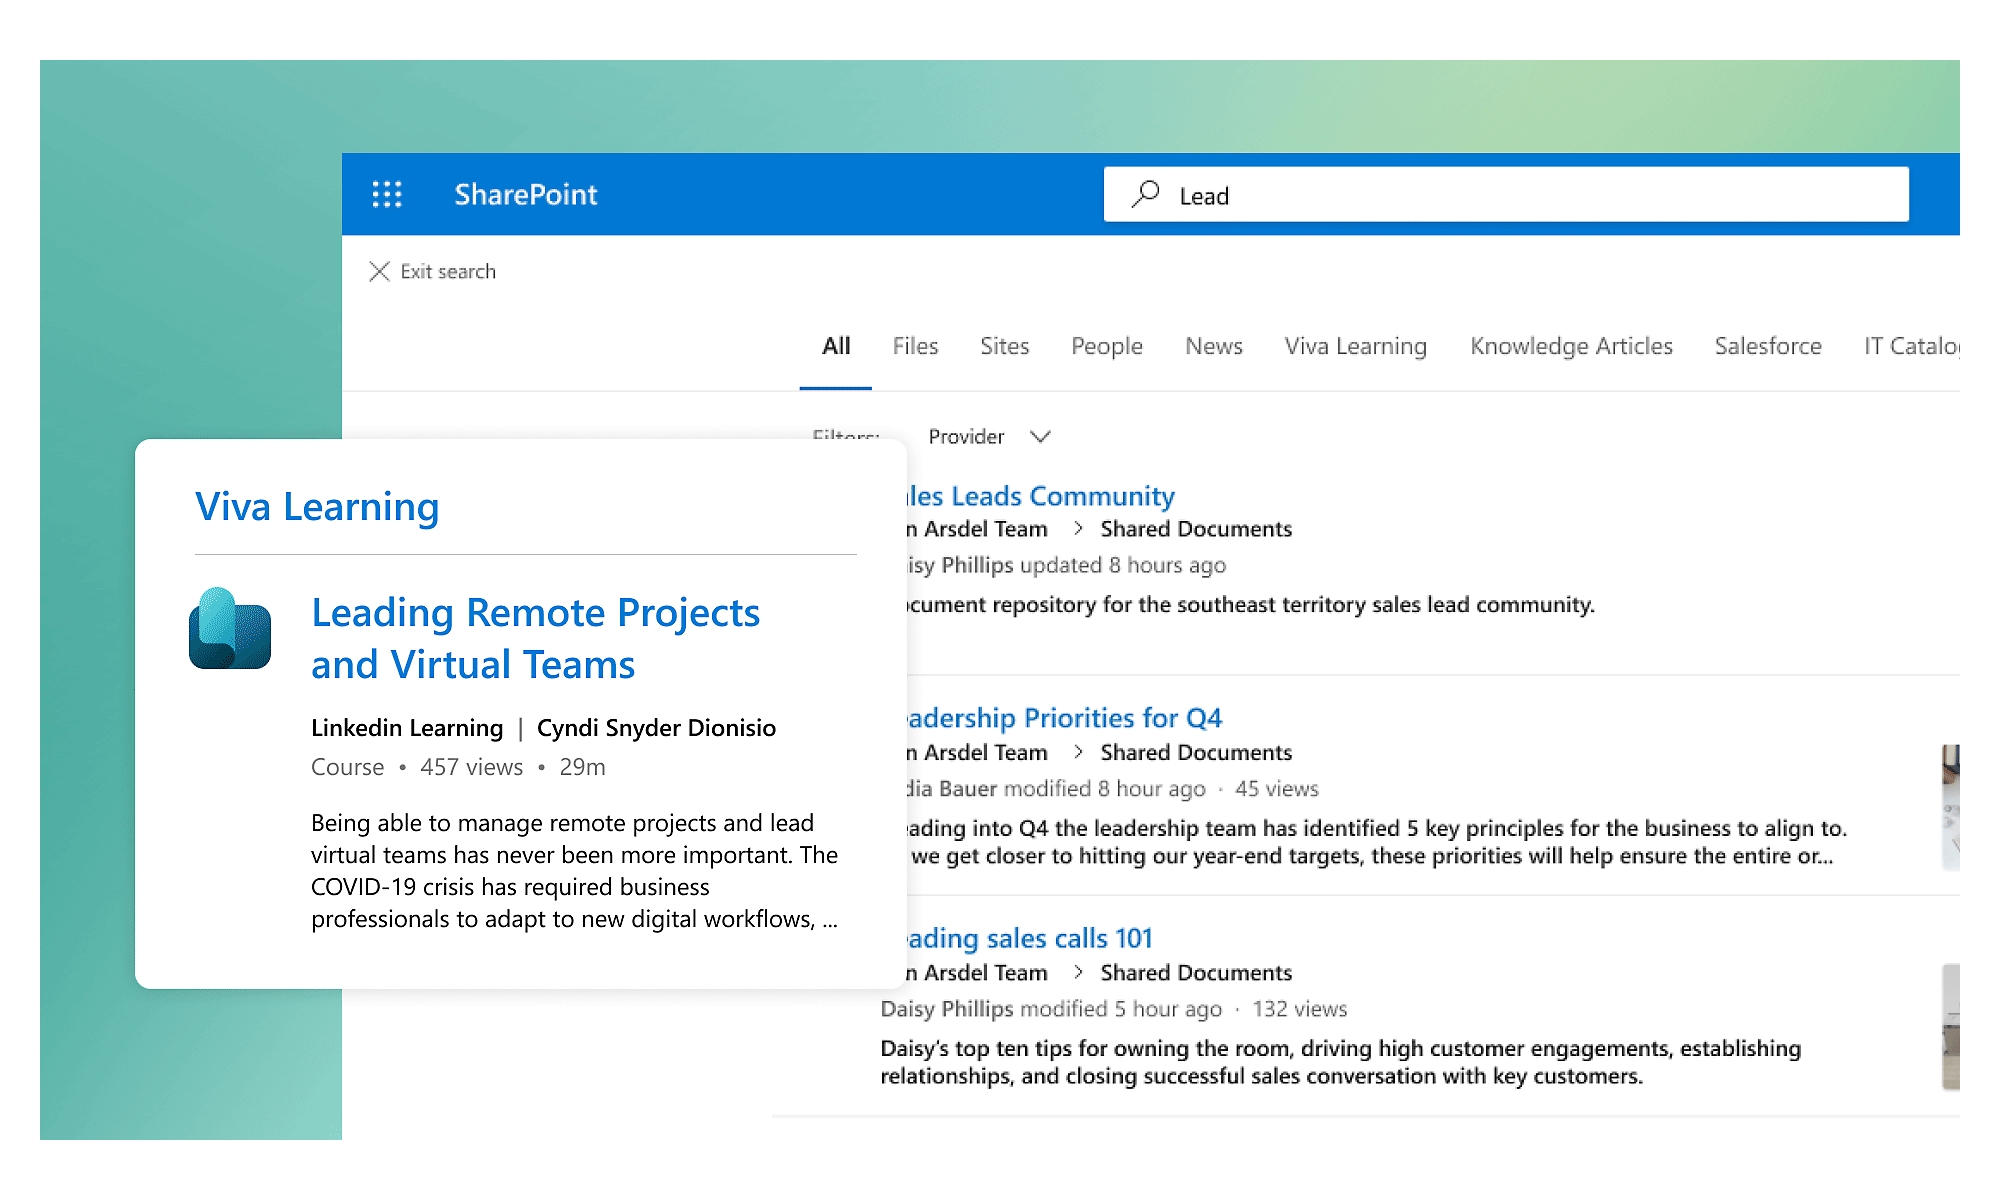 SharePoint で "Lead" を検索した結果の中に Viva Learning からの関連コンテンツが表示されています。